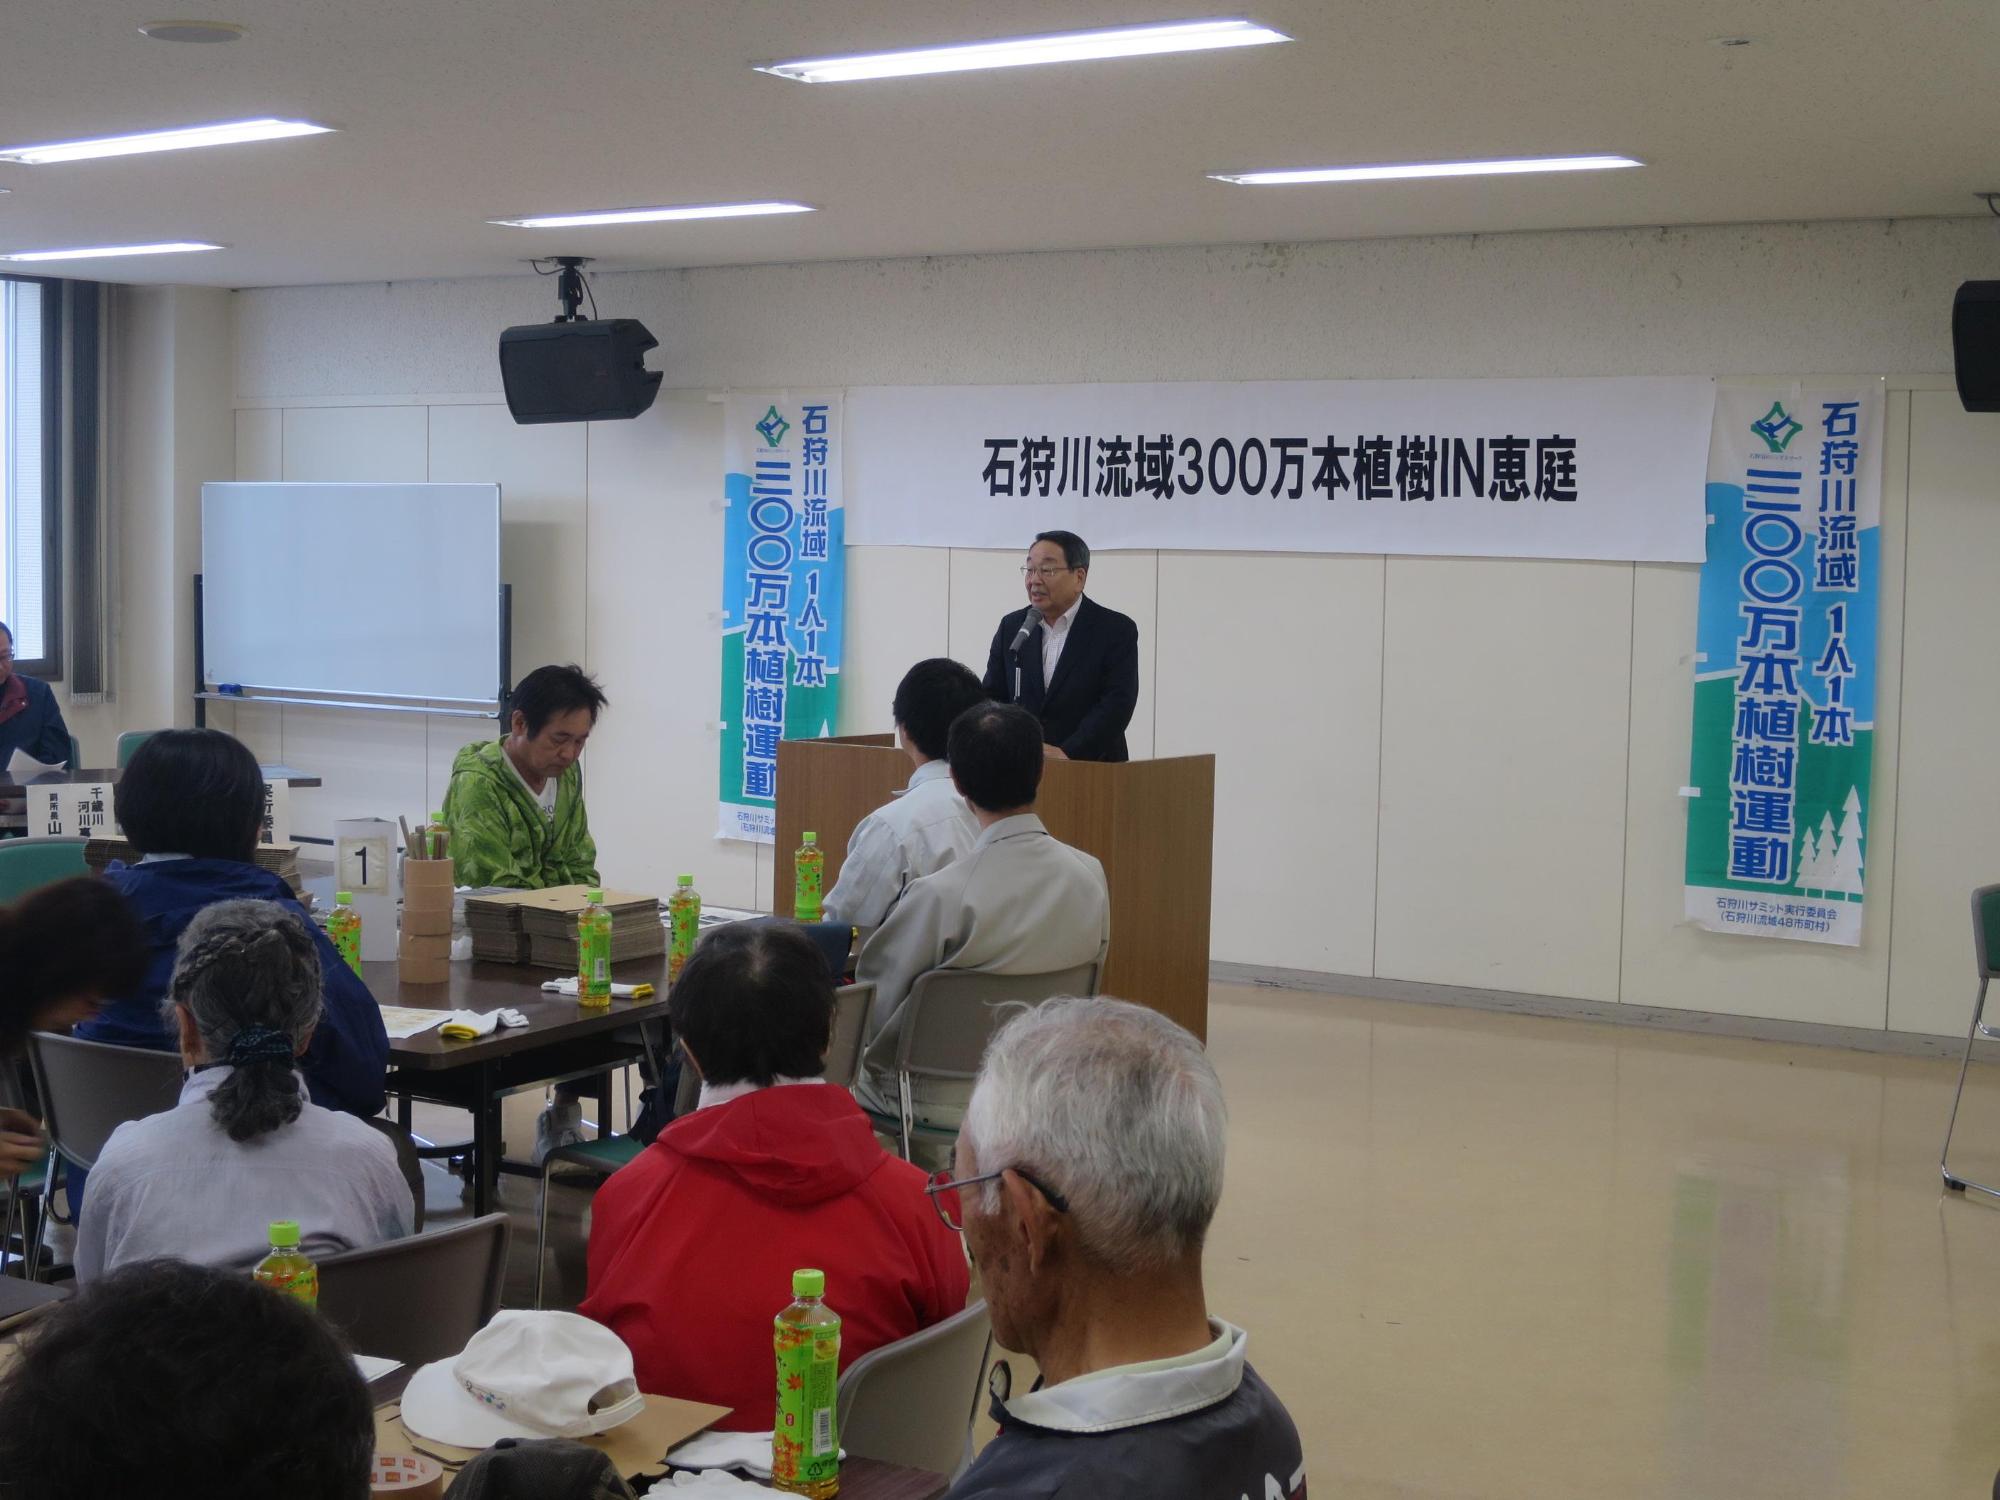 「石狩川流域300万本植樹IN 恵庭」にて挨拶をしている原田市長の写真